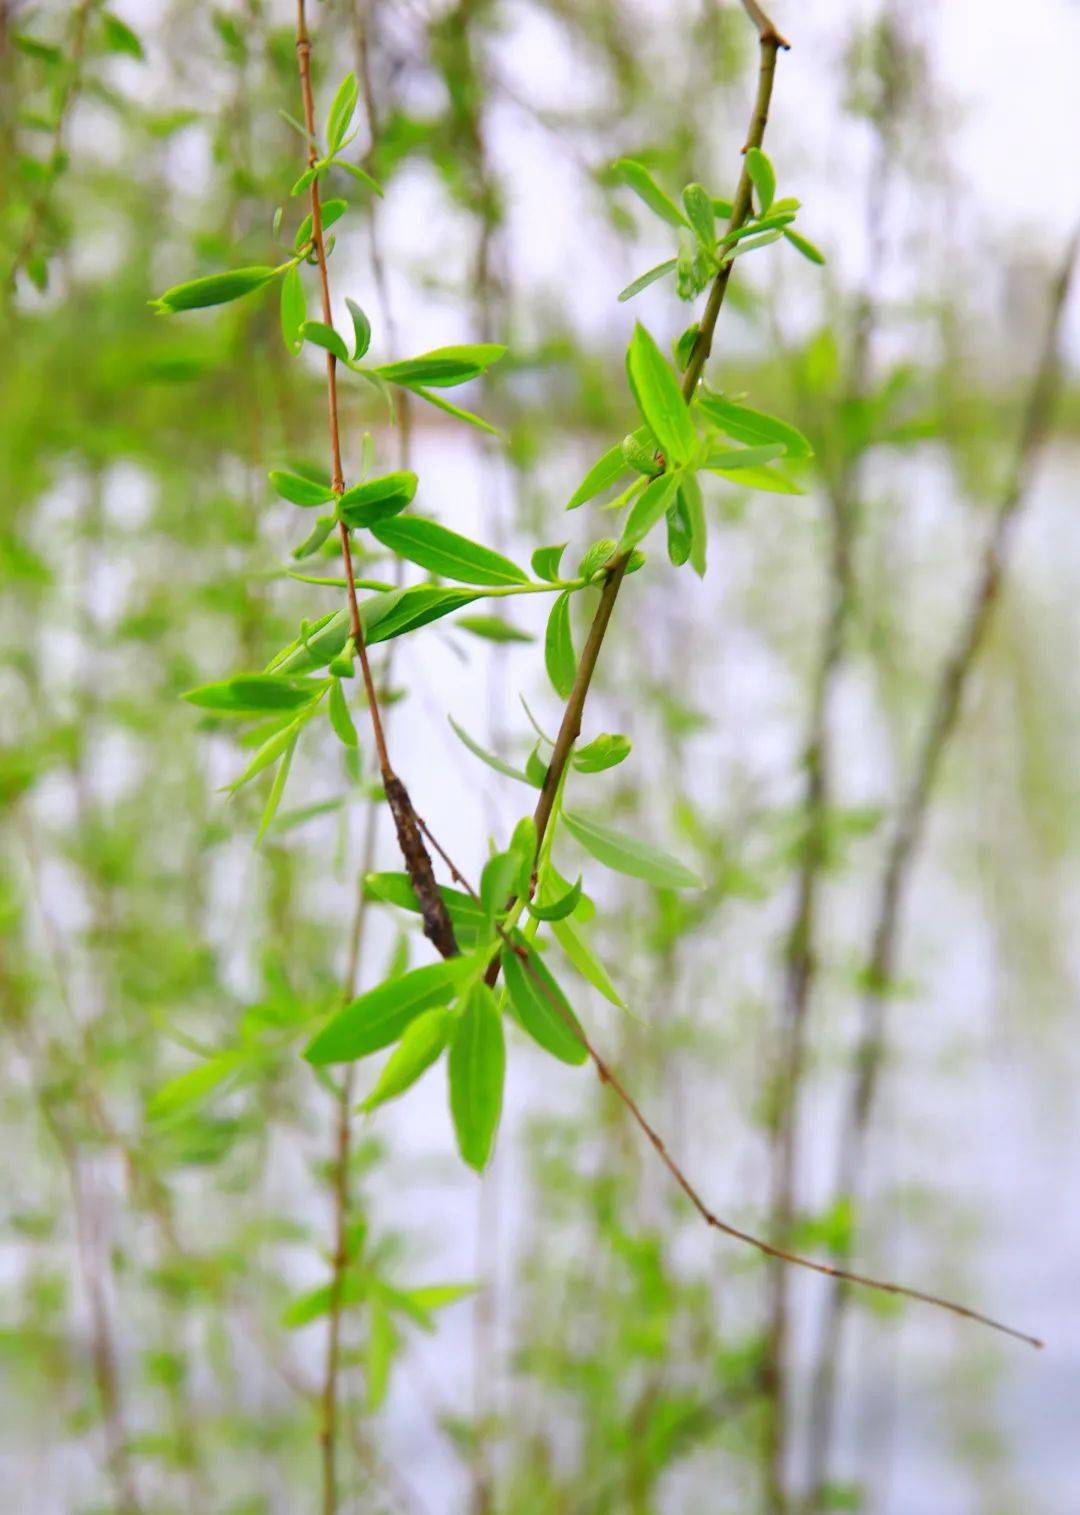 初春时节的柳树叶,颜色嫩绿,披针形的叶片有序的分布于枝条两边,生机